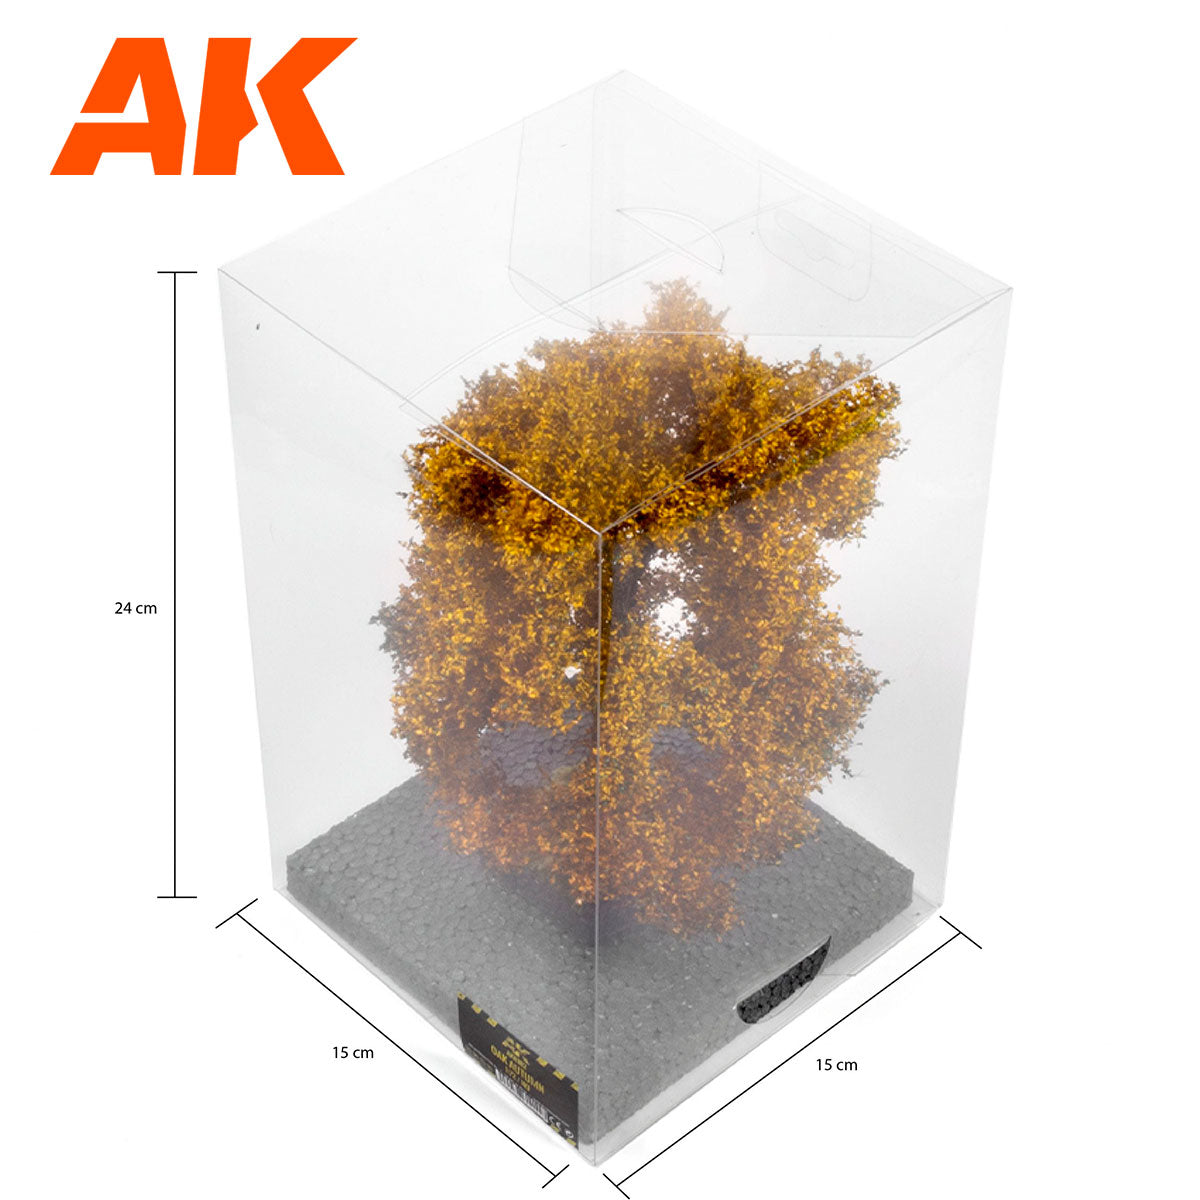 AK8182 - OAK Autumn Tree 1/72